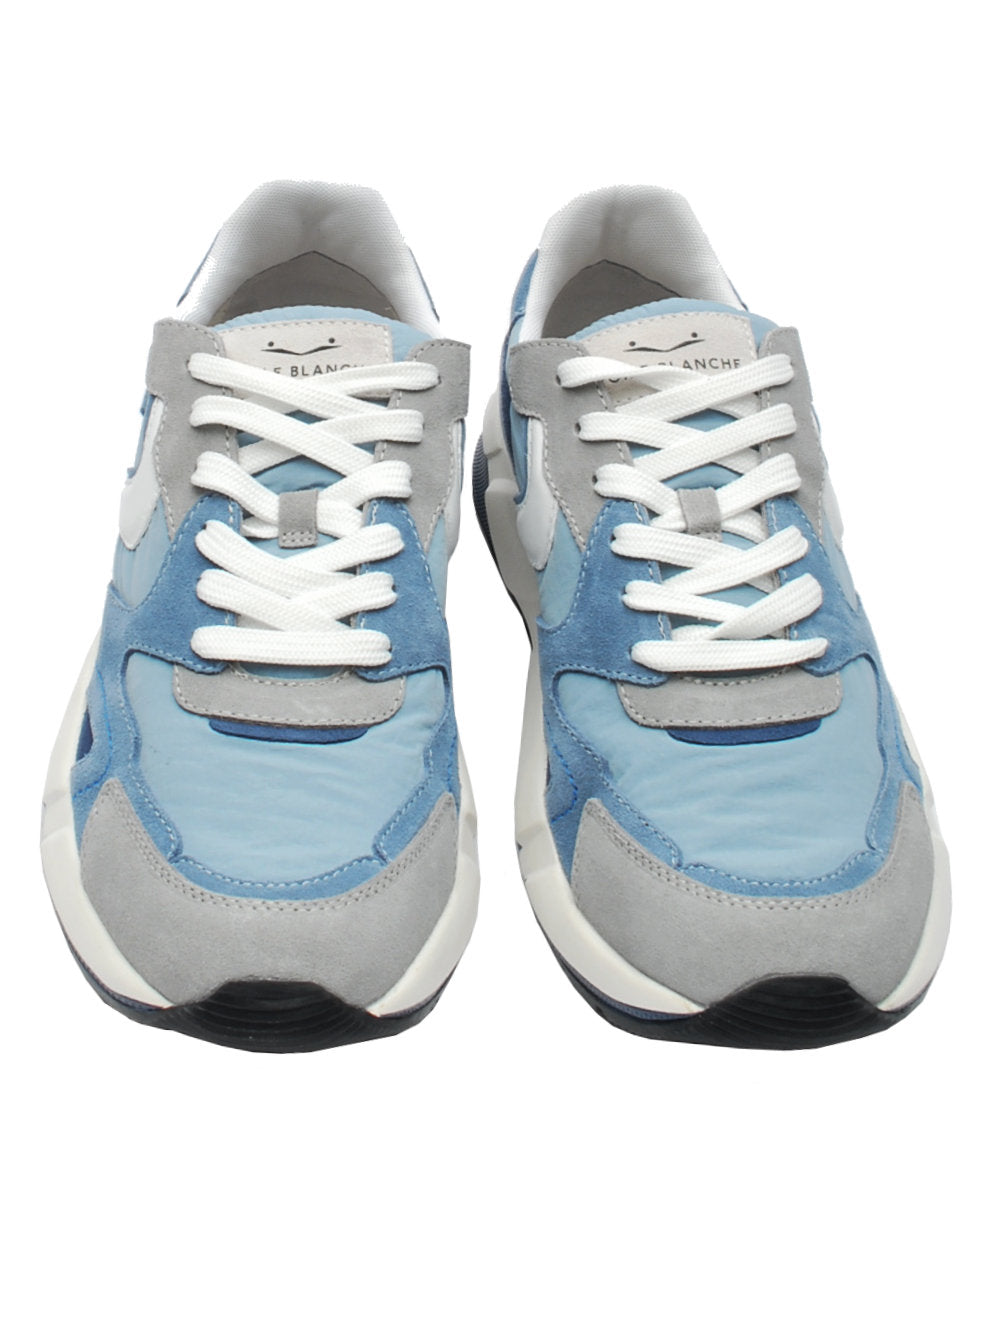 Voile Blanche sneaker club19 8288 grigio, azzurro, blu pe24